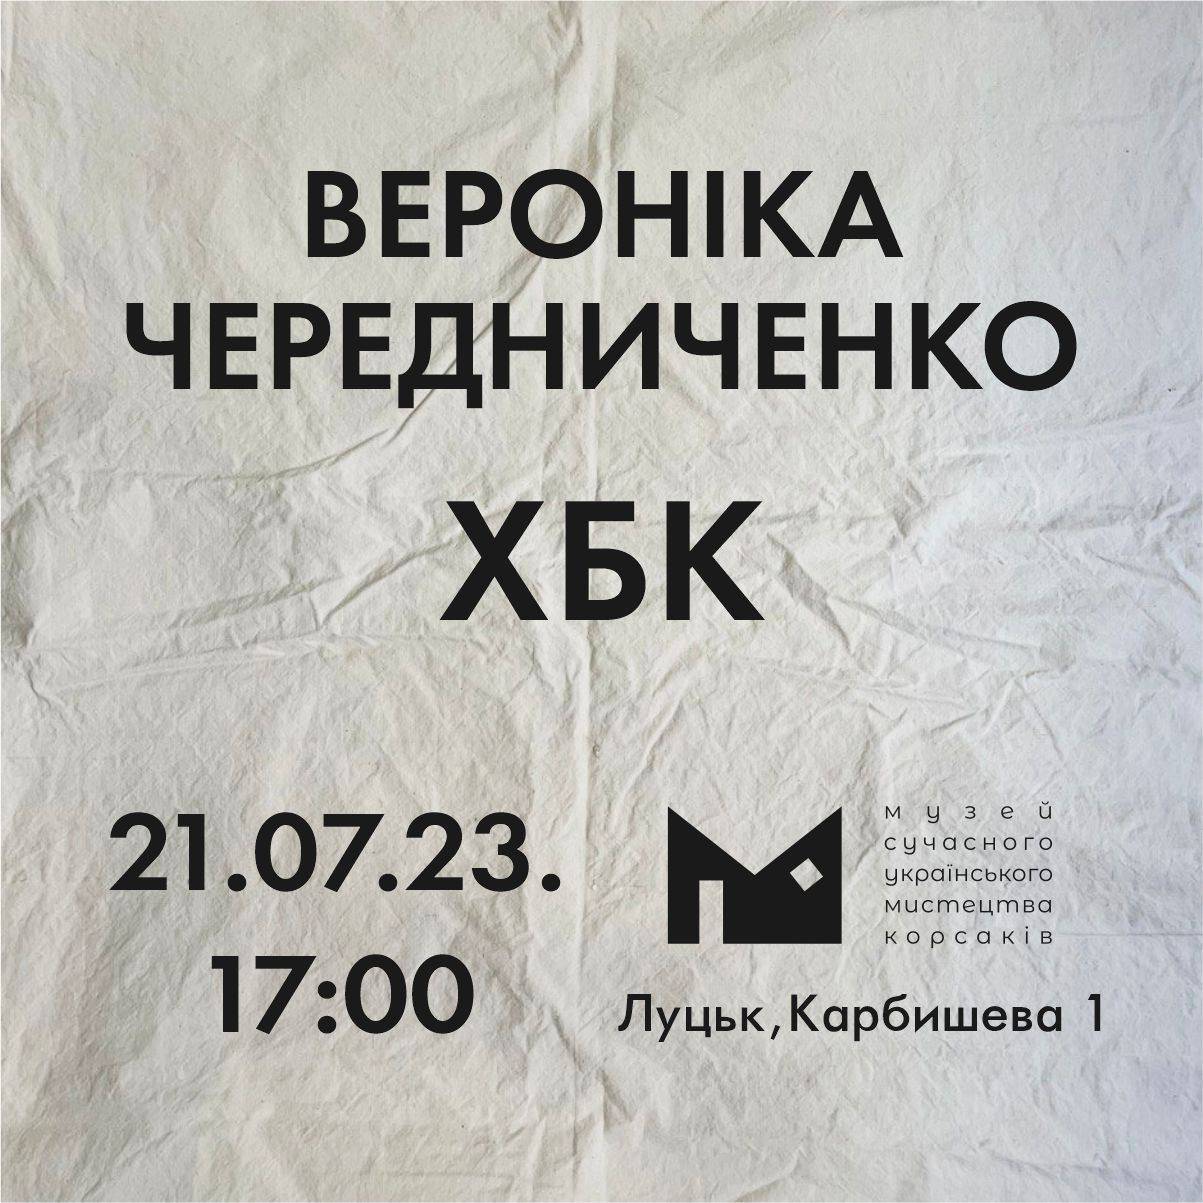 21.07 at 5:00 p.m. the Korsaks’ Museum will host the opening of Veronika Cherednychenko’s project ‘HBK’!